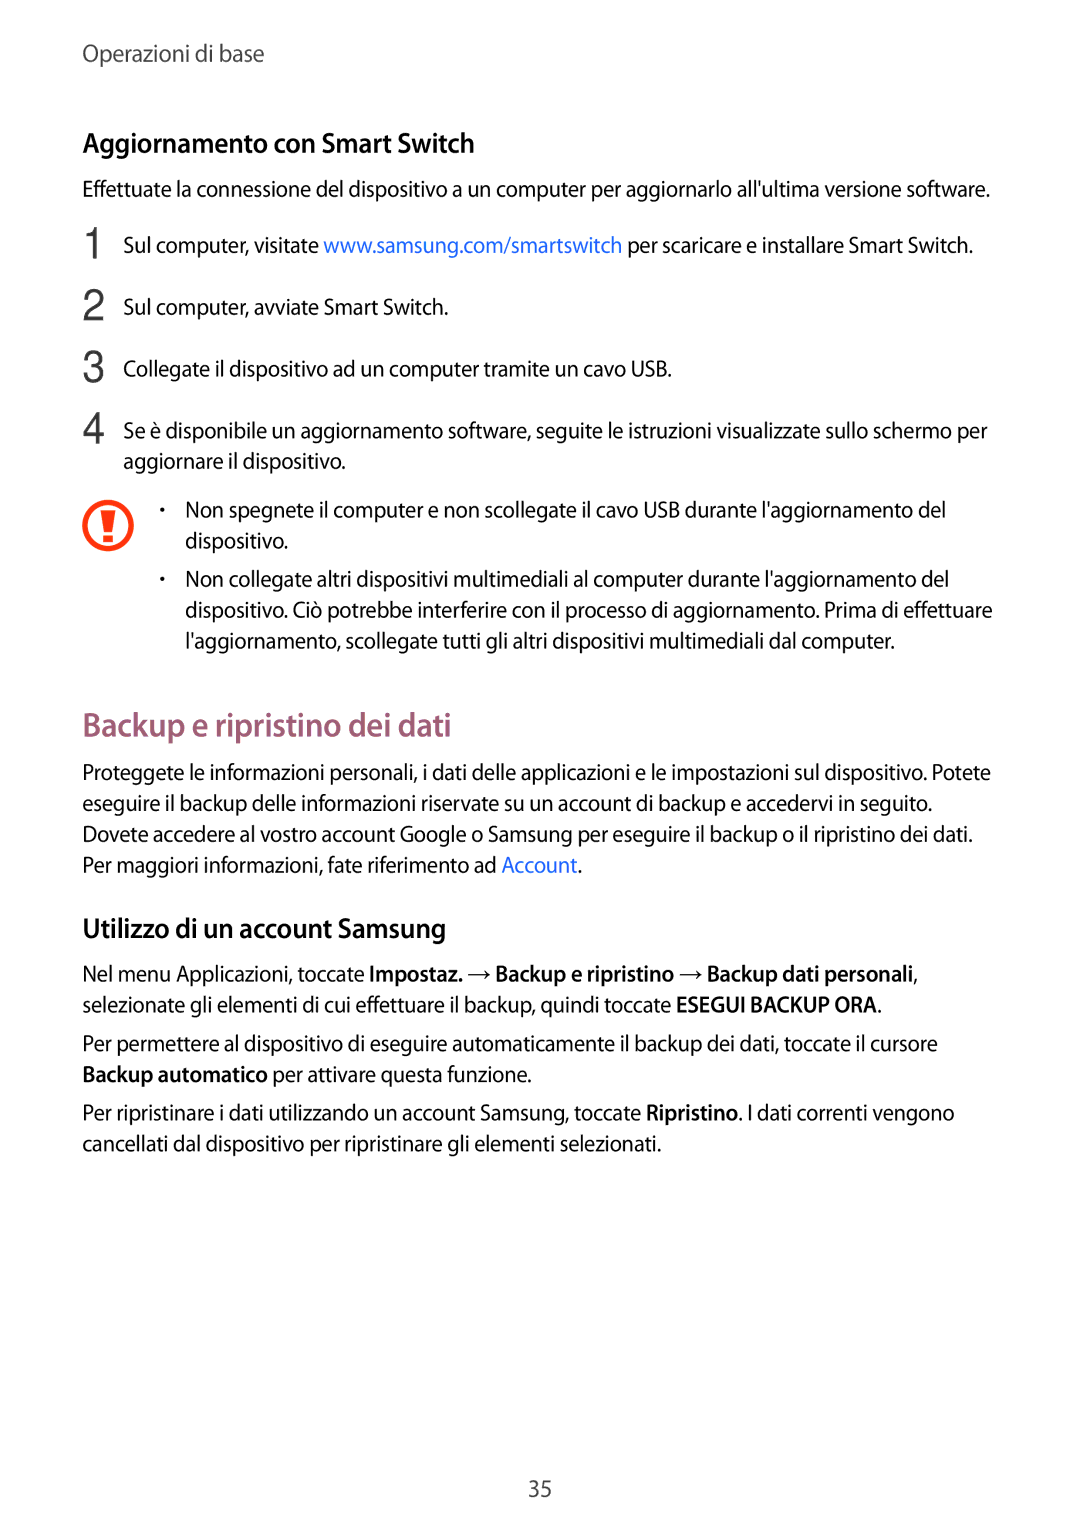 Samsung SM-T285NZKAITV manual Backup e ripristino dei dati, Aggiornamento con Smart Switch, Utilizzo di un account Samsung 